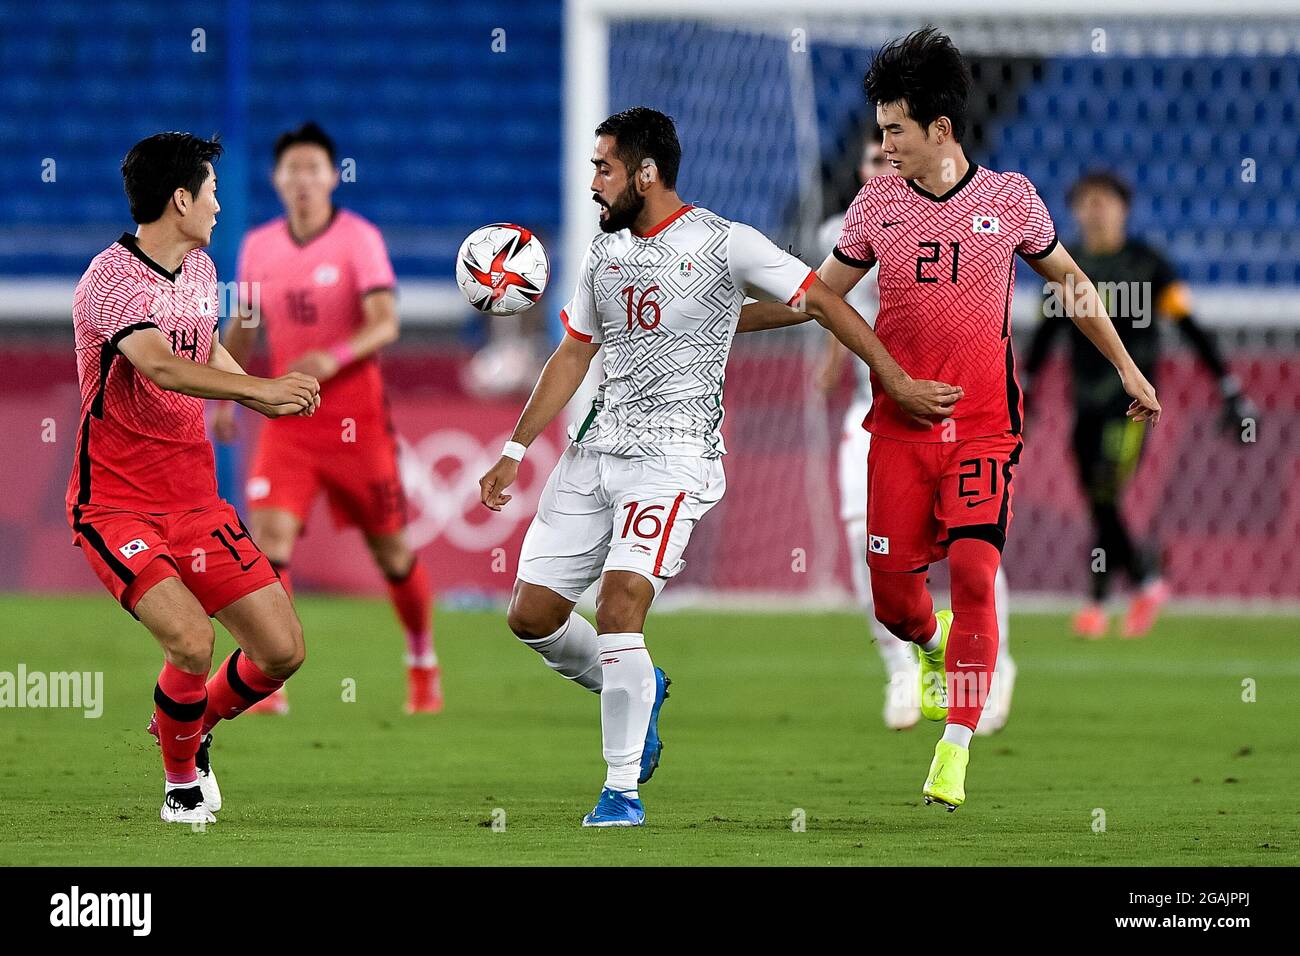 YOKOHAMA, GIAPPONE - LUGLIO 31: Dong-hyun Kim della Corea del Sud, Jose  Esquivel del Messico e Jin-gyu Kim della Corea del Sud durante la partita  finale del torneo olimpico di calcio maschile